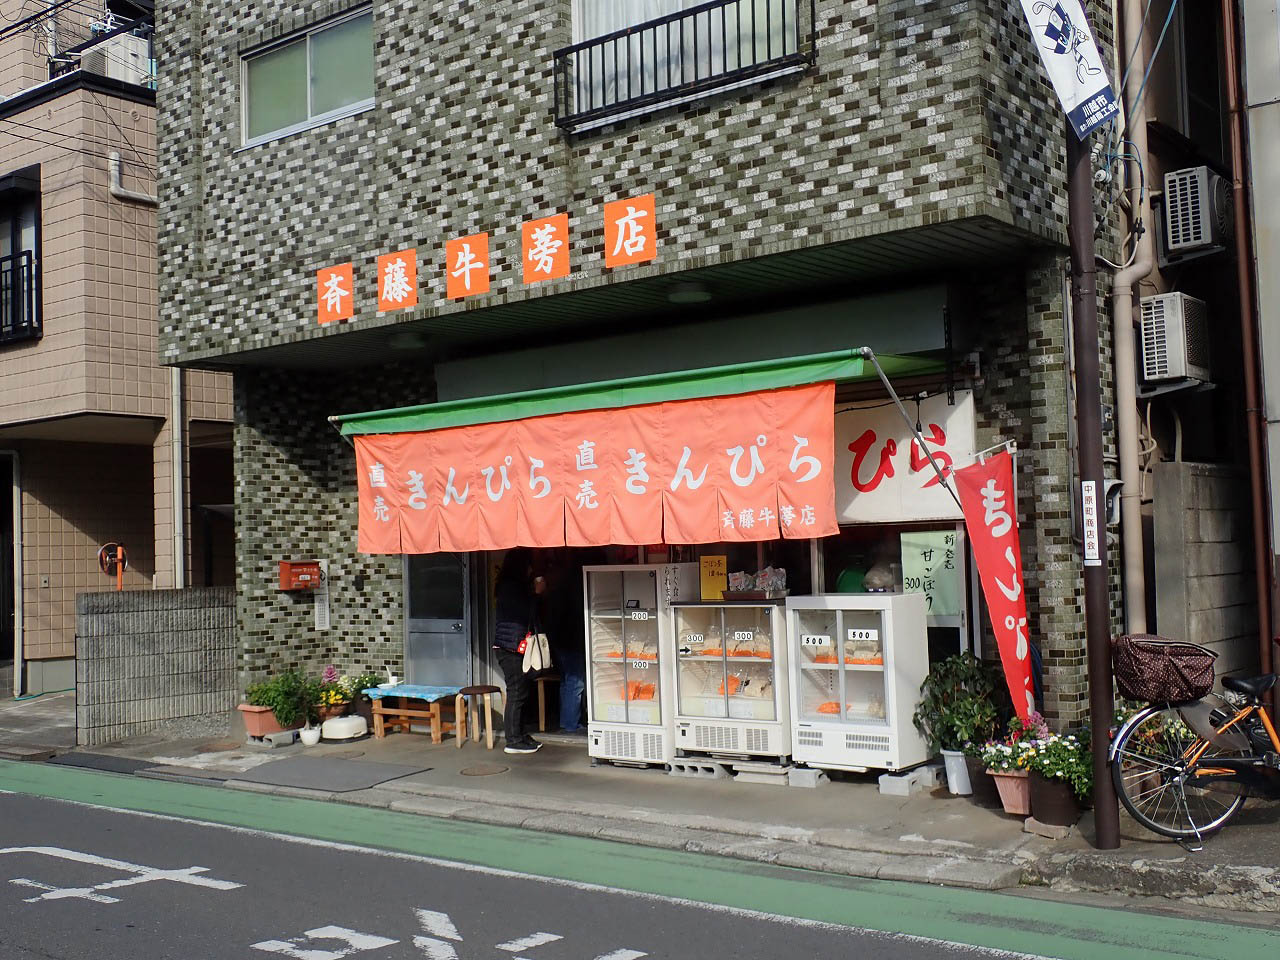 『タカトシ&温水の路線バスの旅』で紹介された『斉藤牛蒡店』